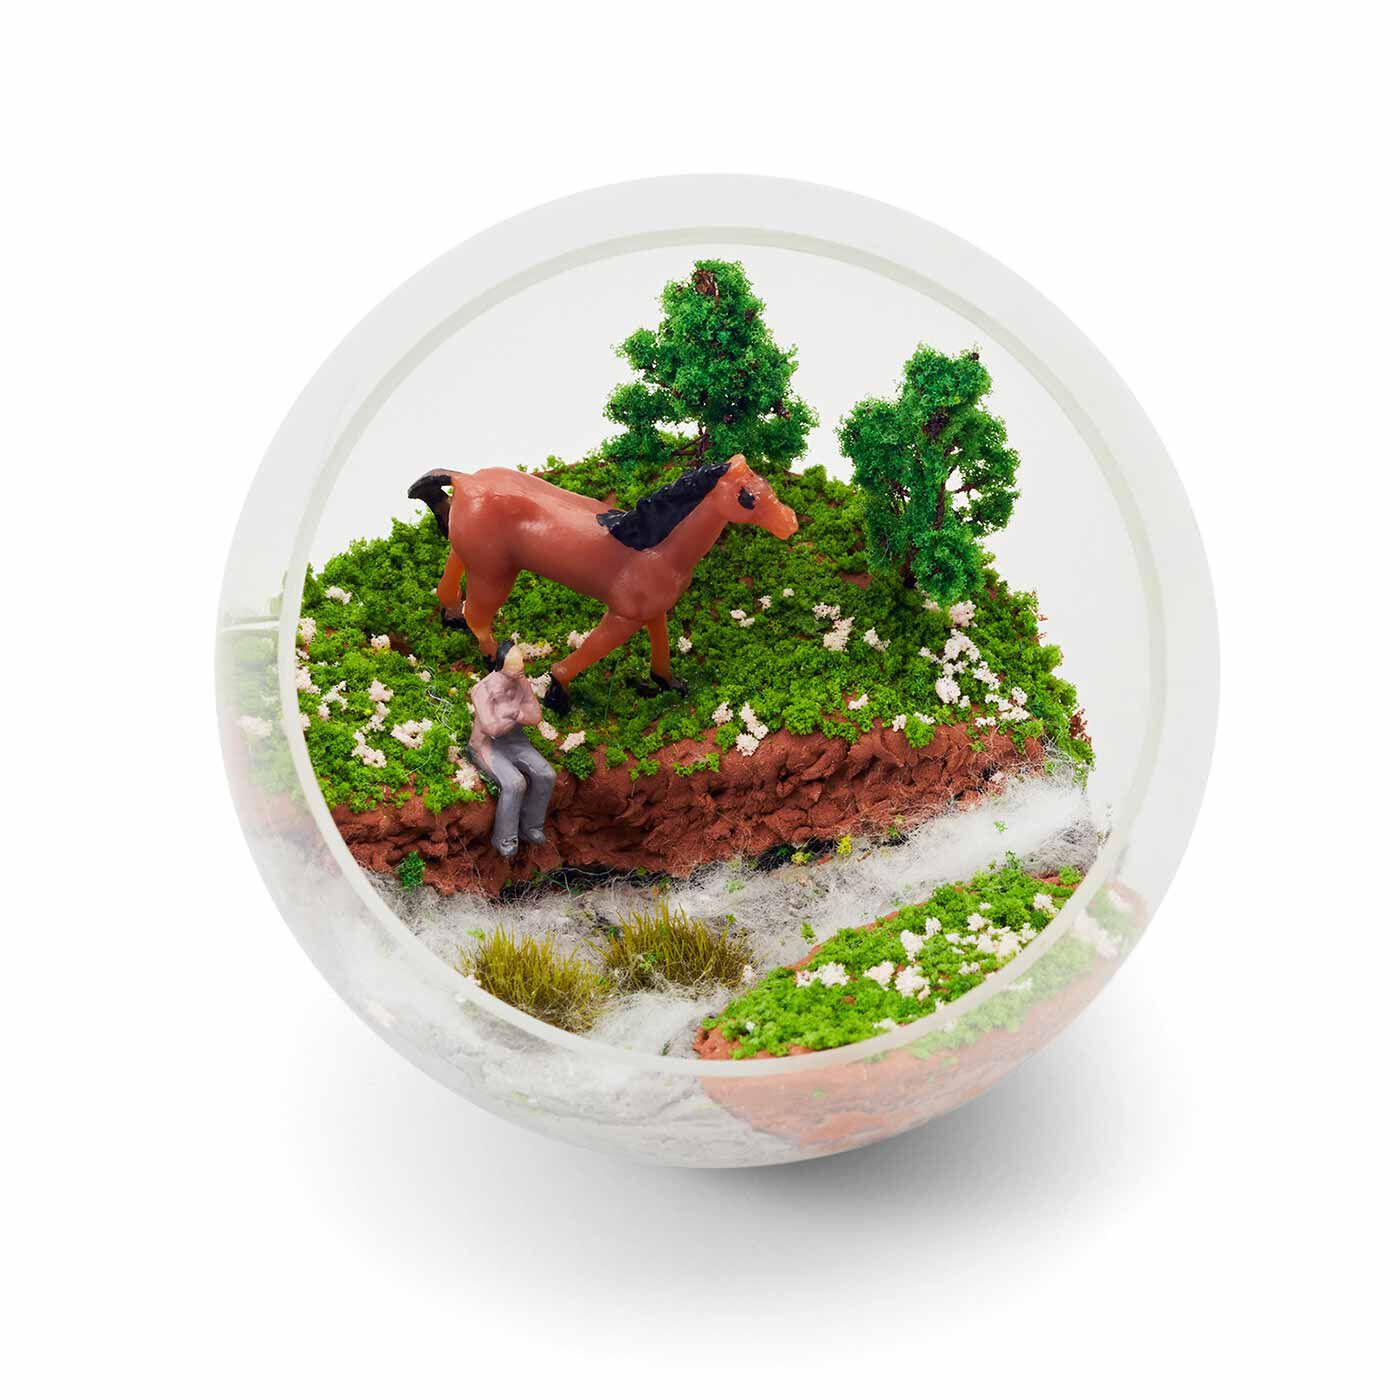 クチュリエ|手のひらサイズの小さなオアシス 草木の模型パーツで作るジオラマテラリウムの会|〈川辺でひと休み〉